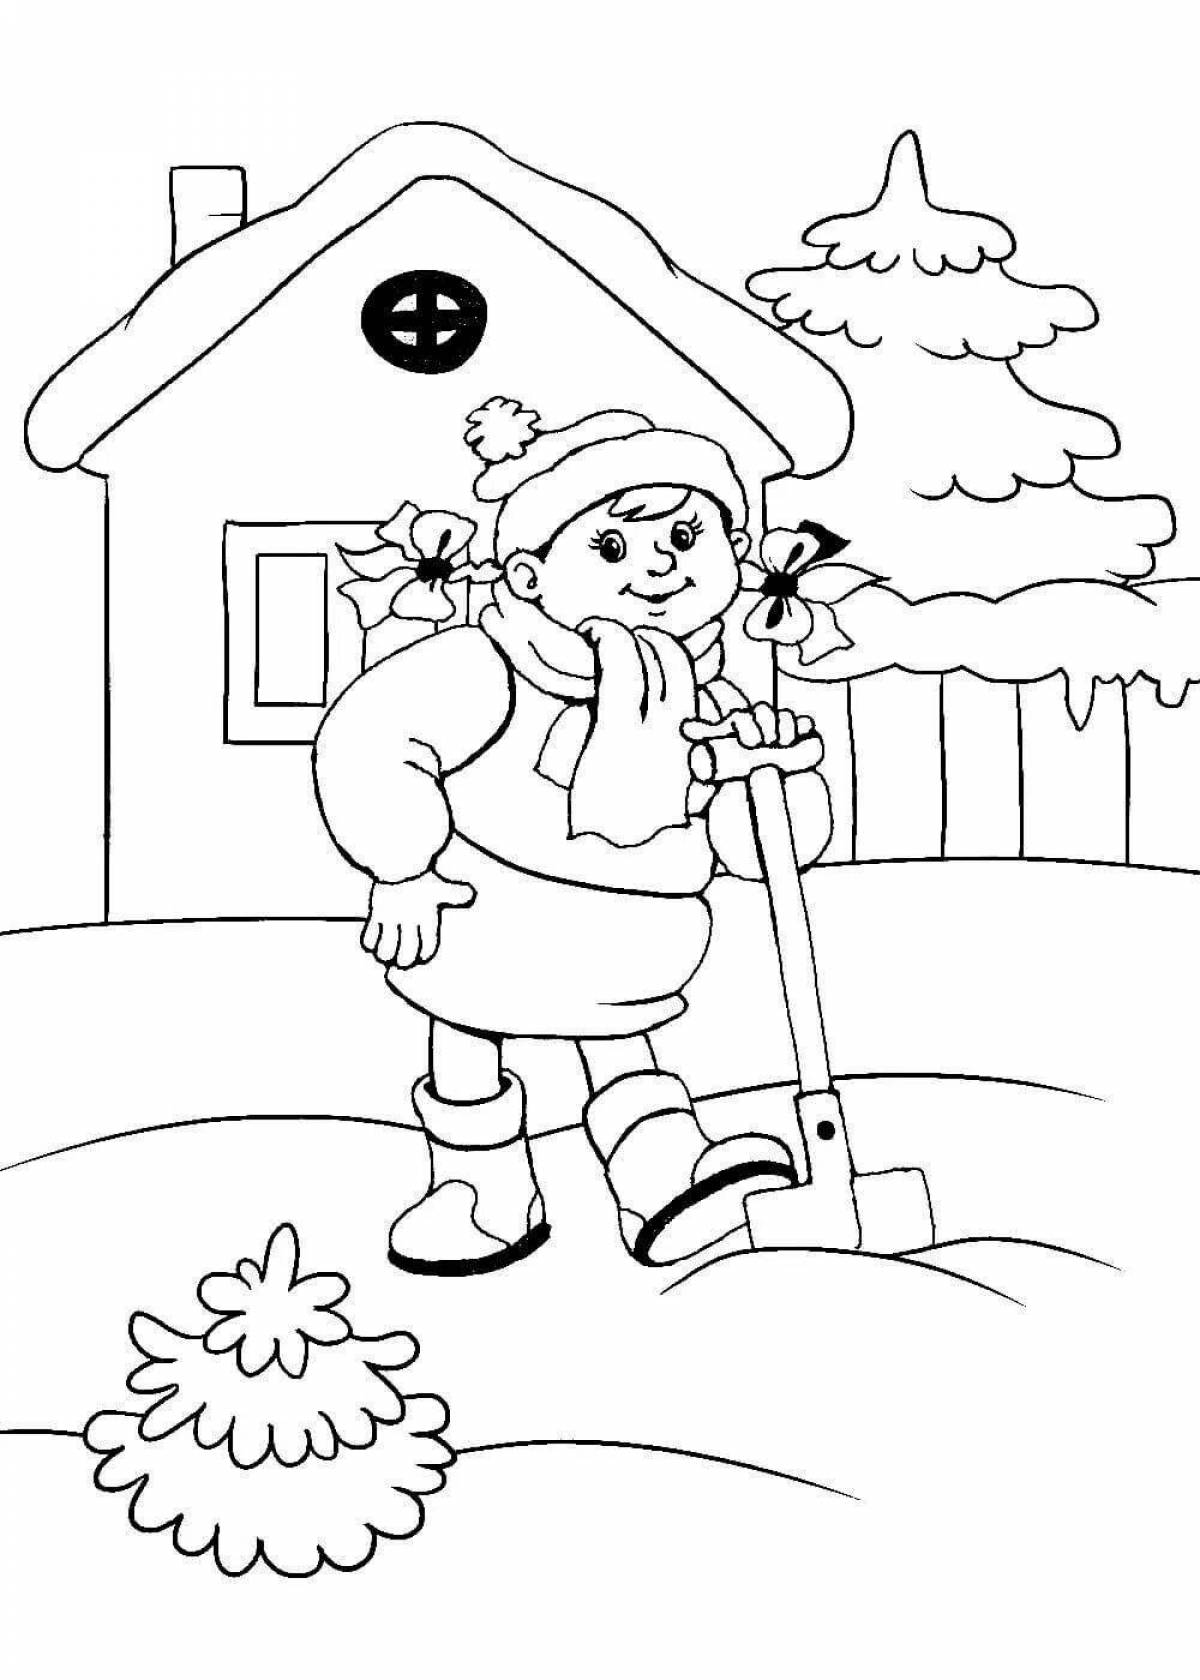 Красочная раскраска о сельскохозяйственных работах зимой